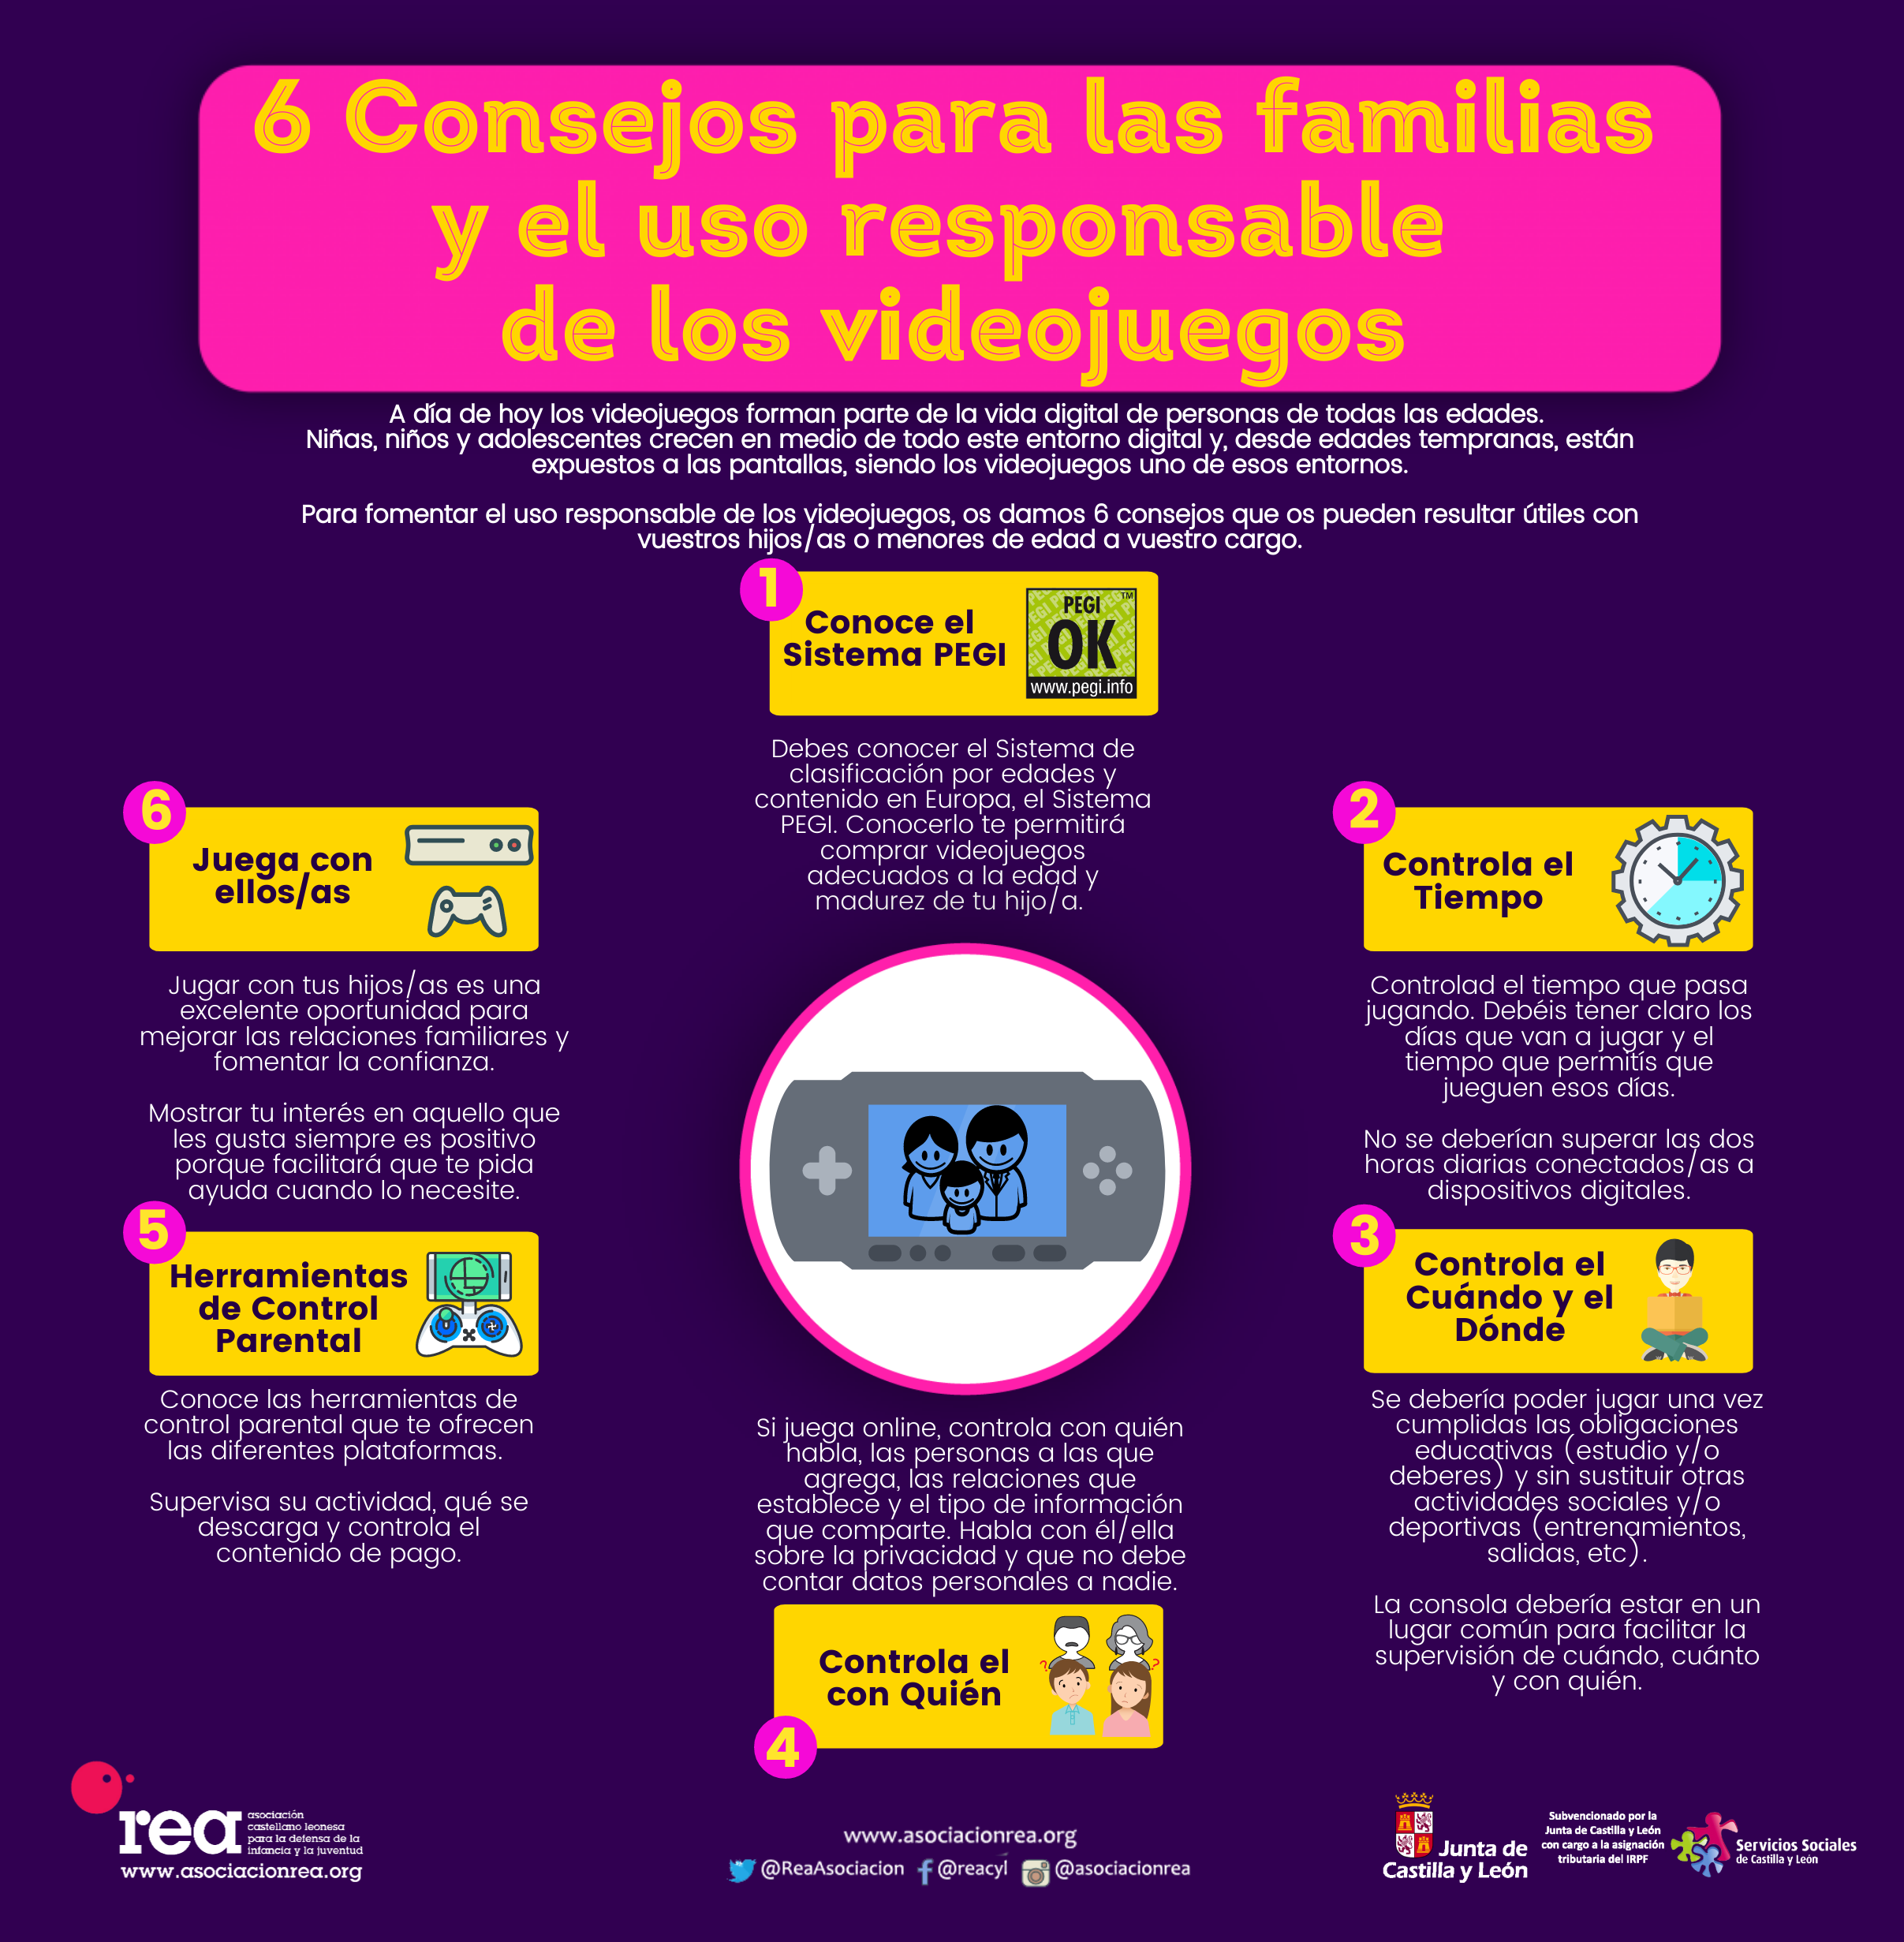 Videojuegos Online: Consejos para familias